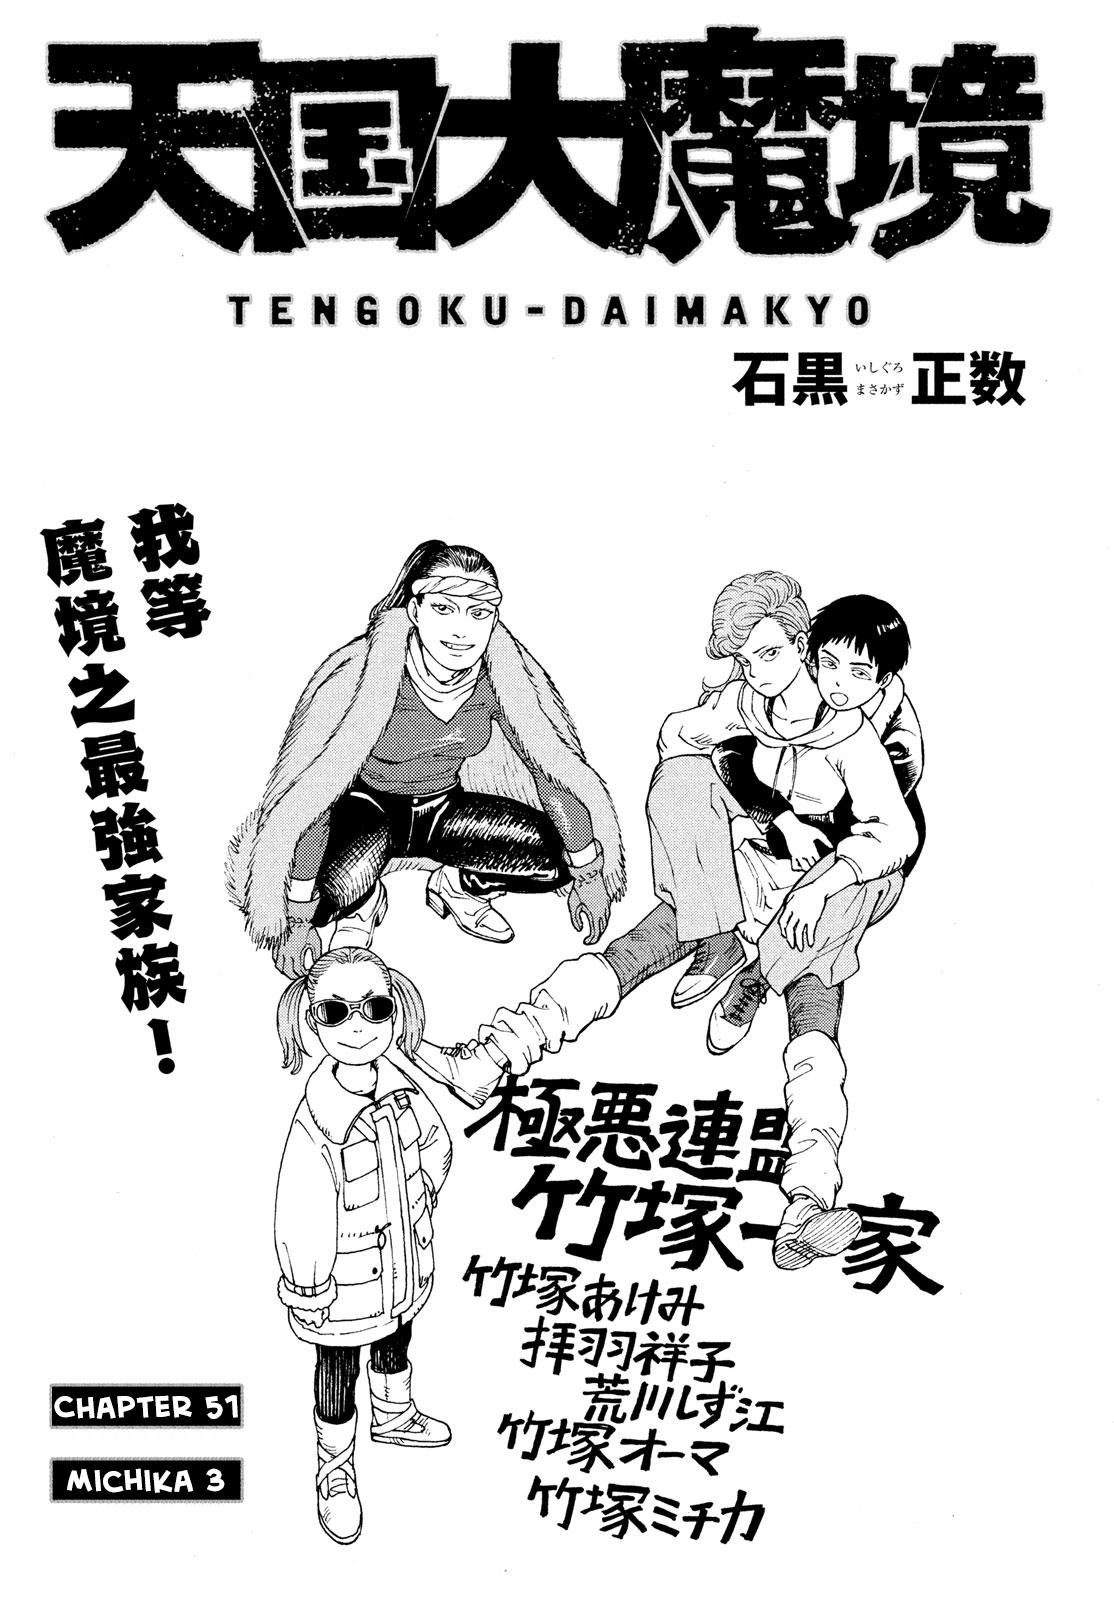 Read Tengoku Daimakyou Chapter 29: Walled City ➄ - Manganelo